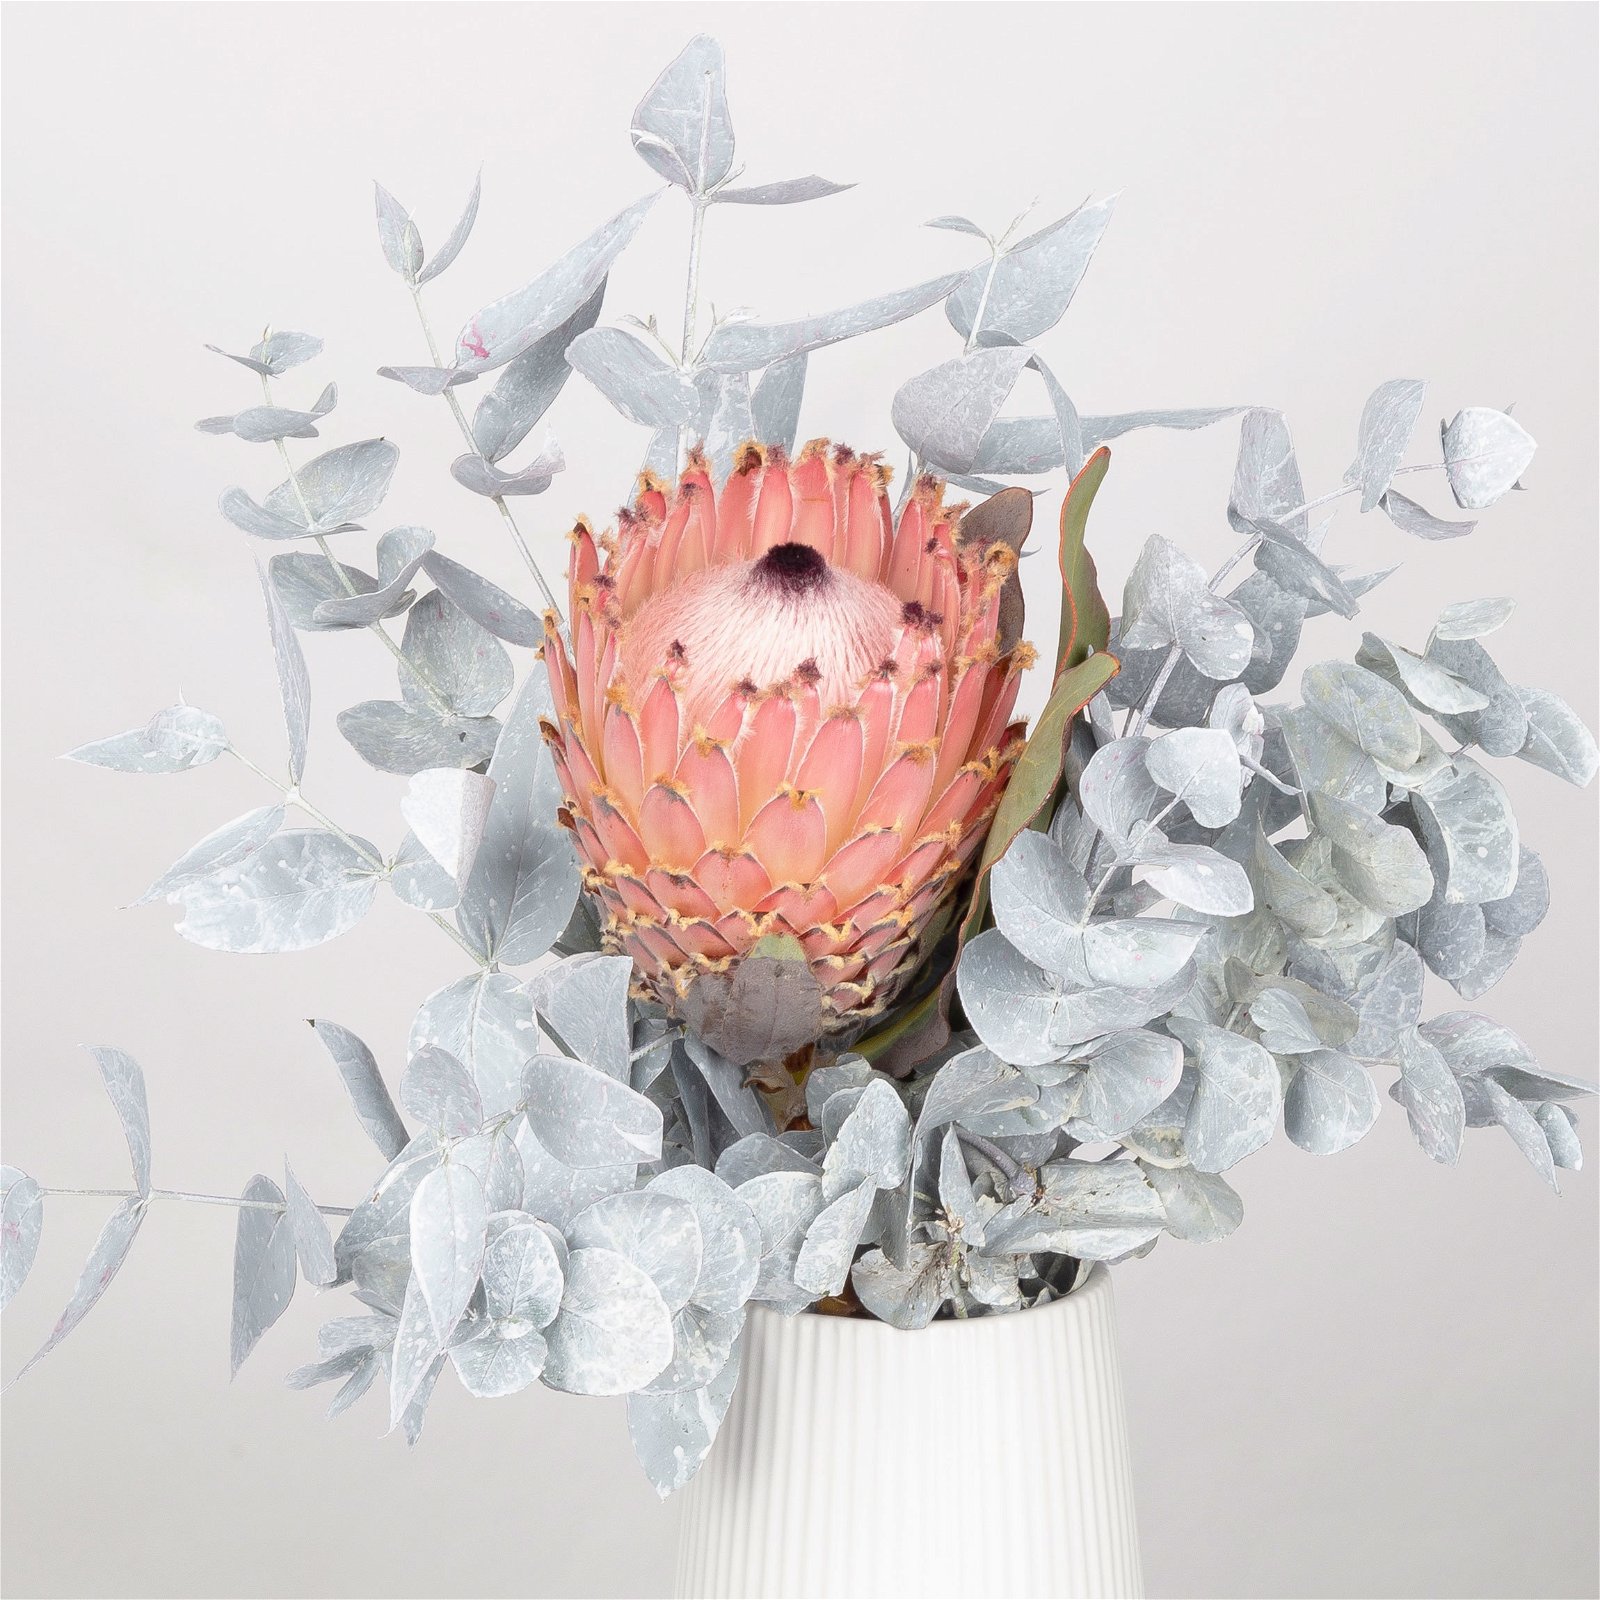 Blumenbund Protea barbigera & Eukalyptus weiß gefärbt, inkl. gratis Grußkarte